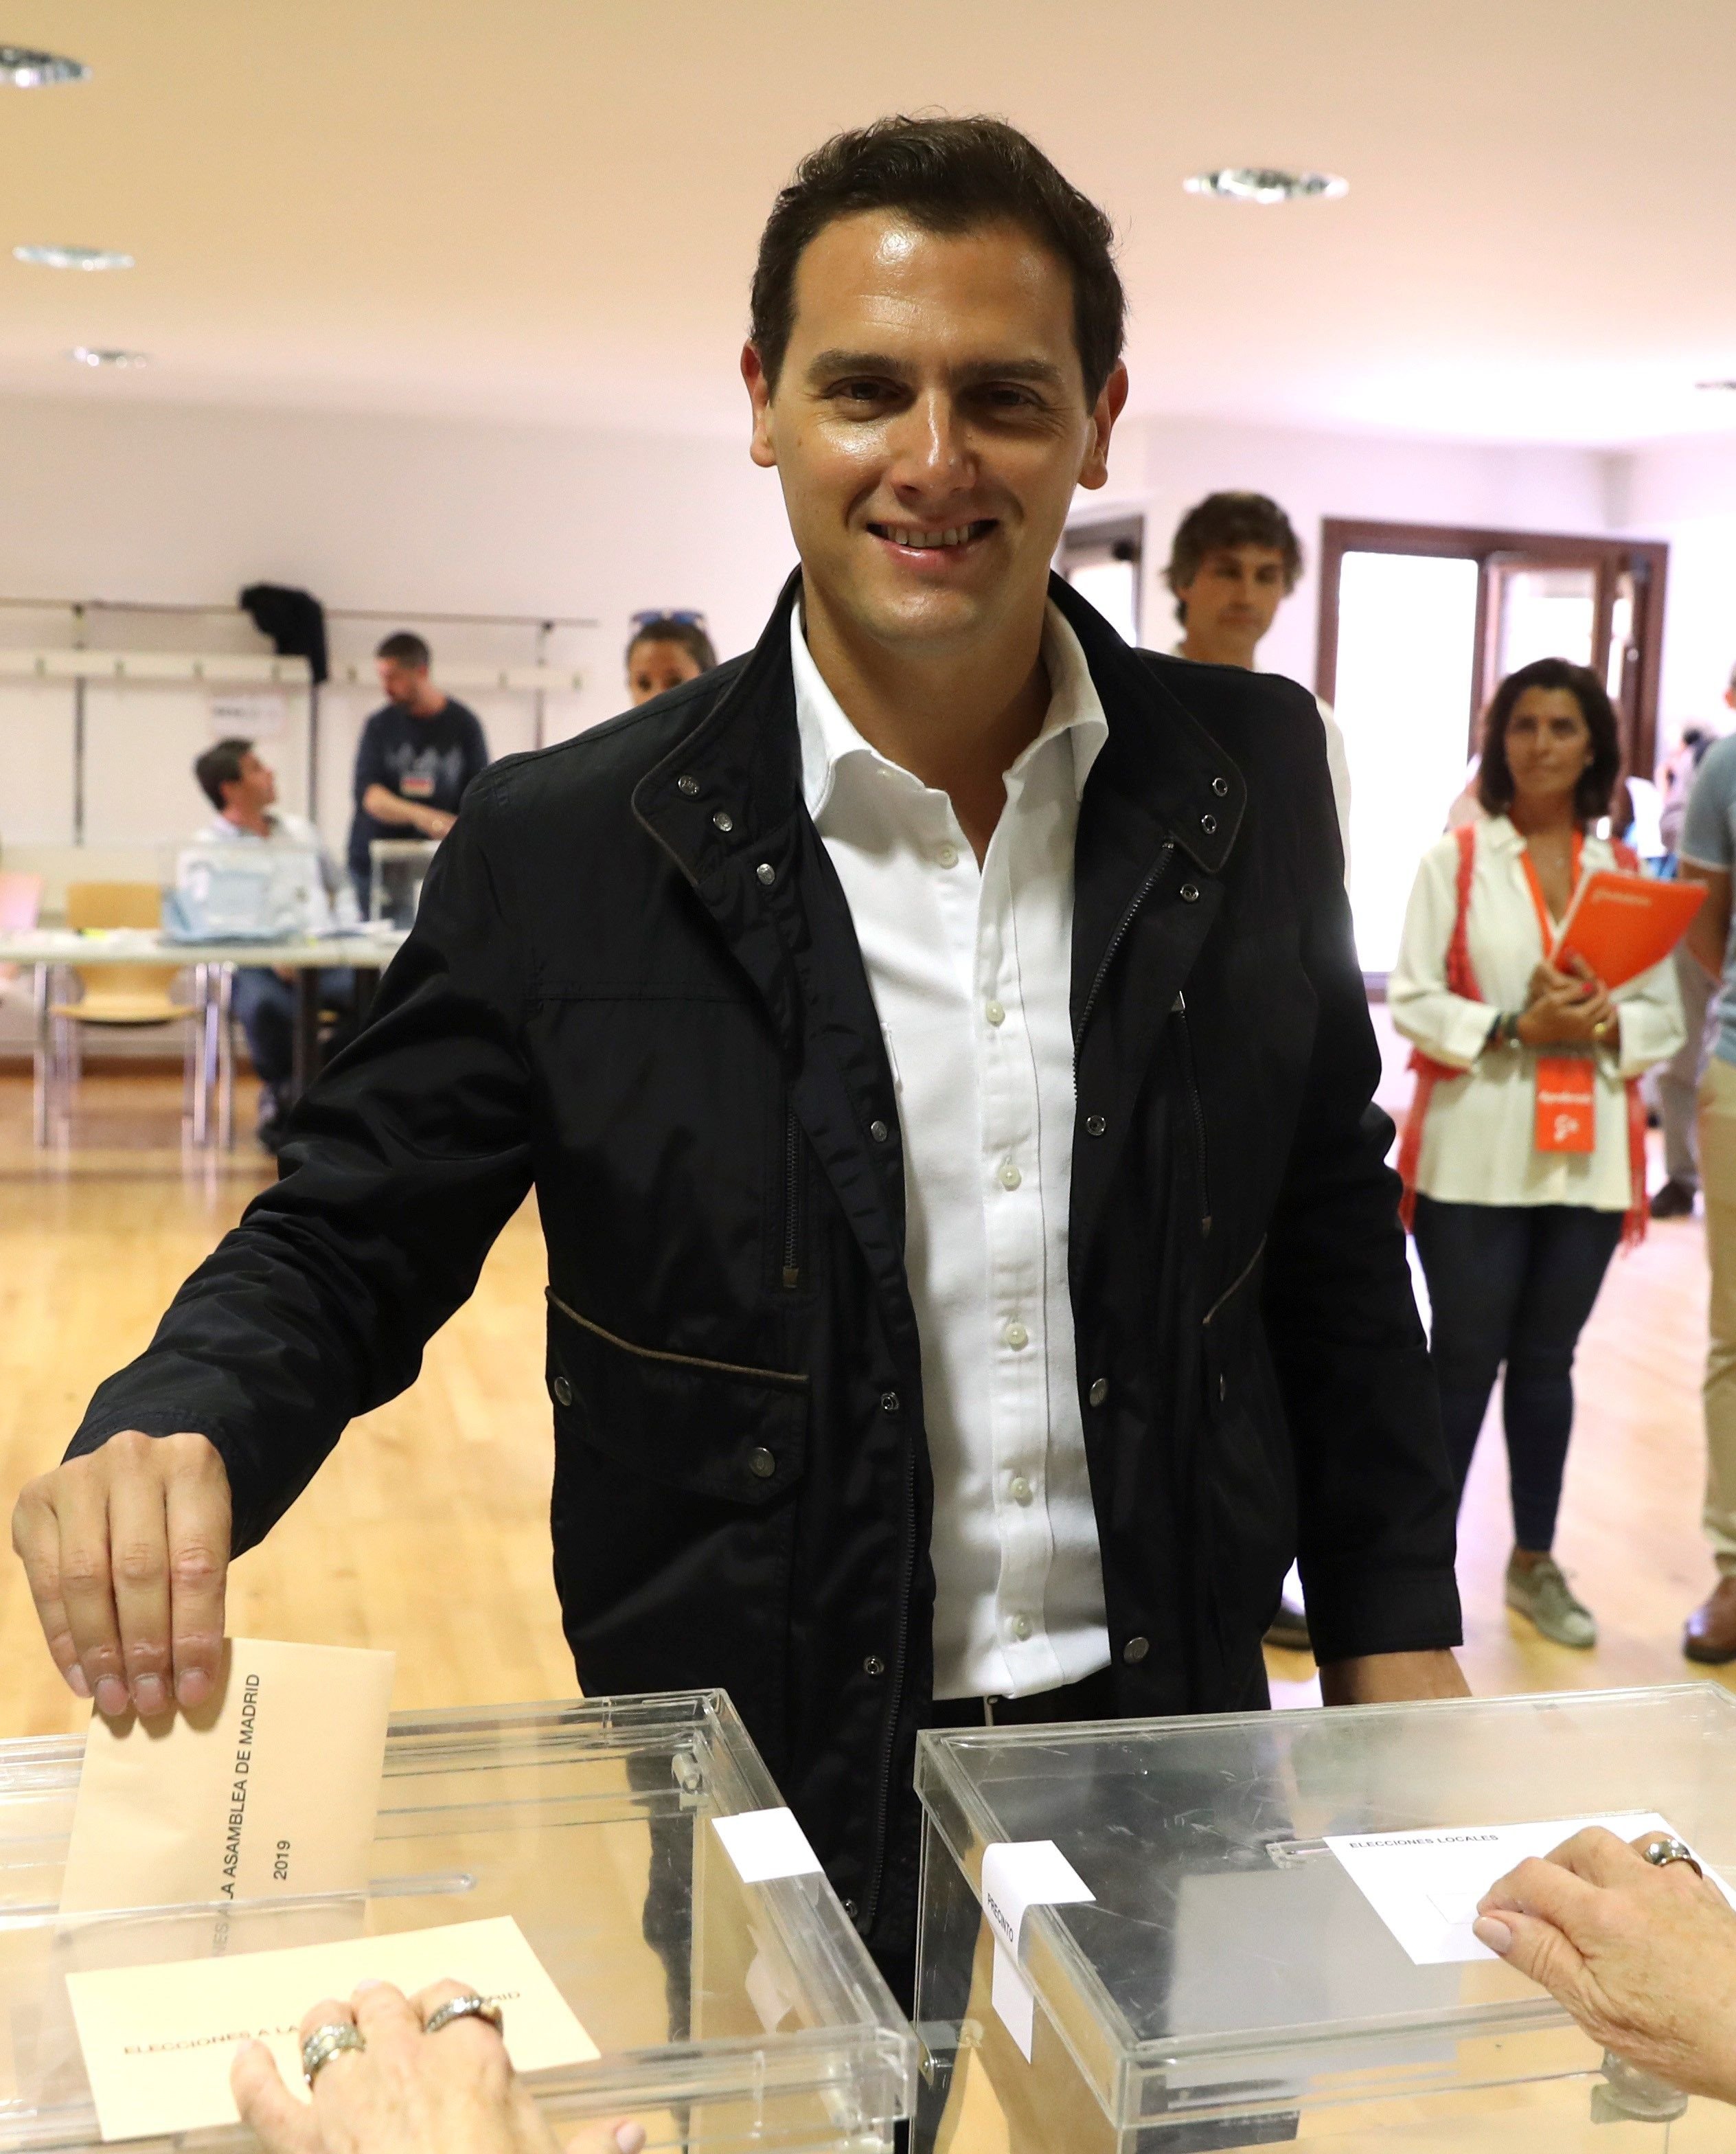 Rivera, carne de burla en la red después de votar en Madrid